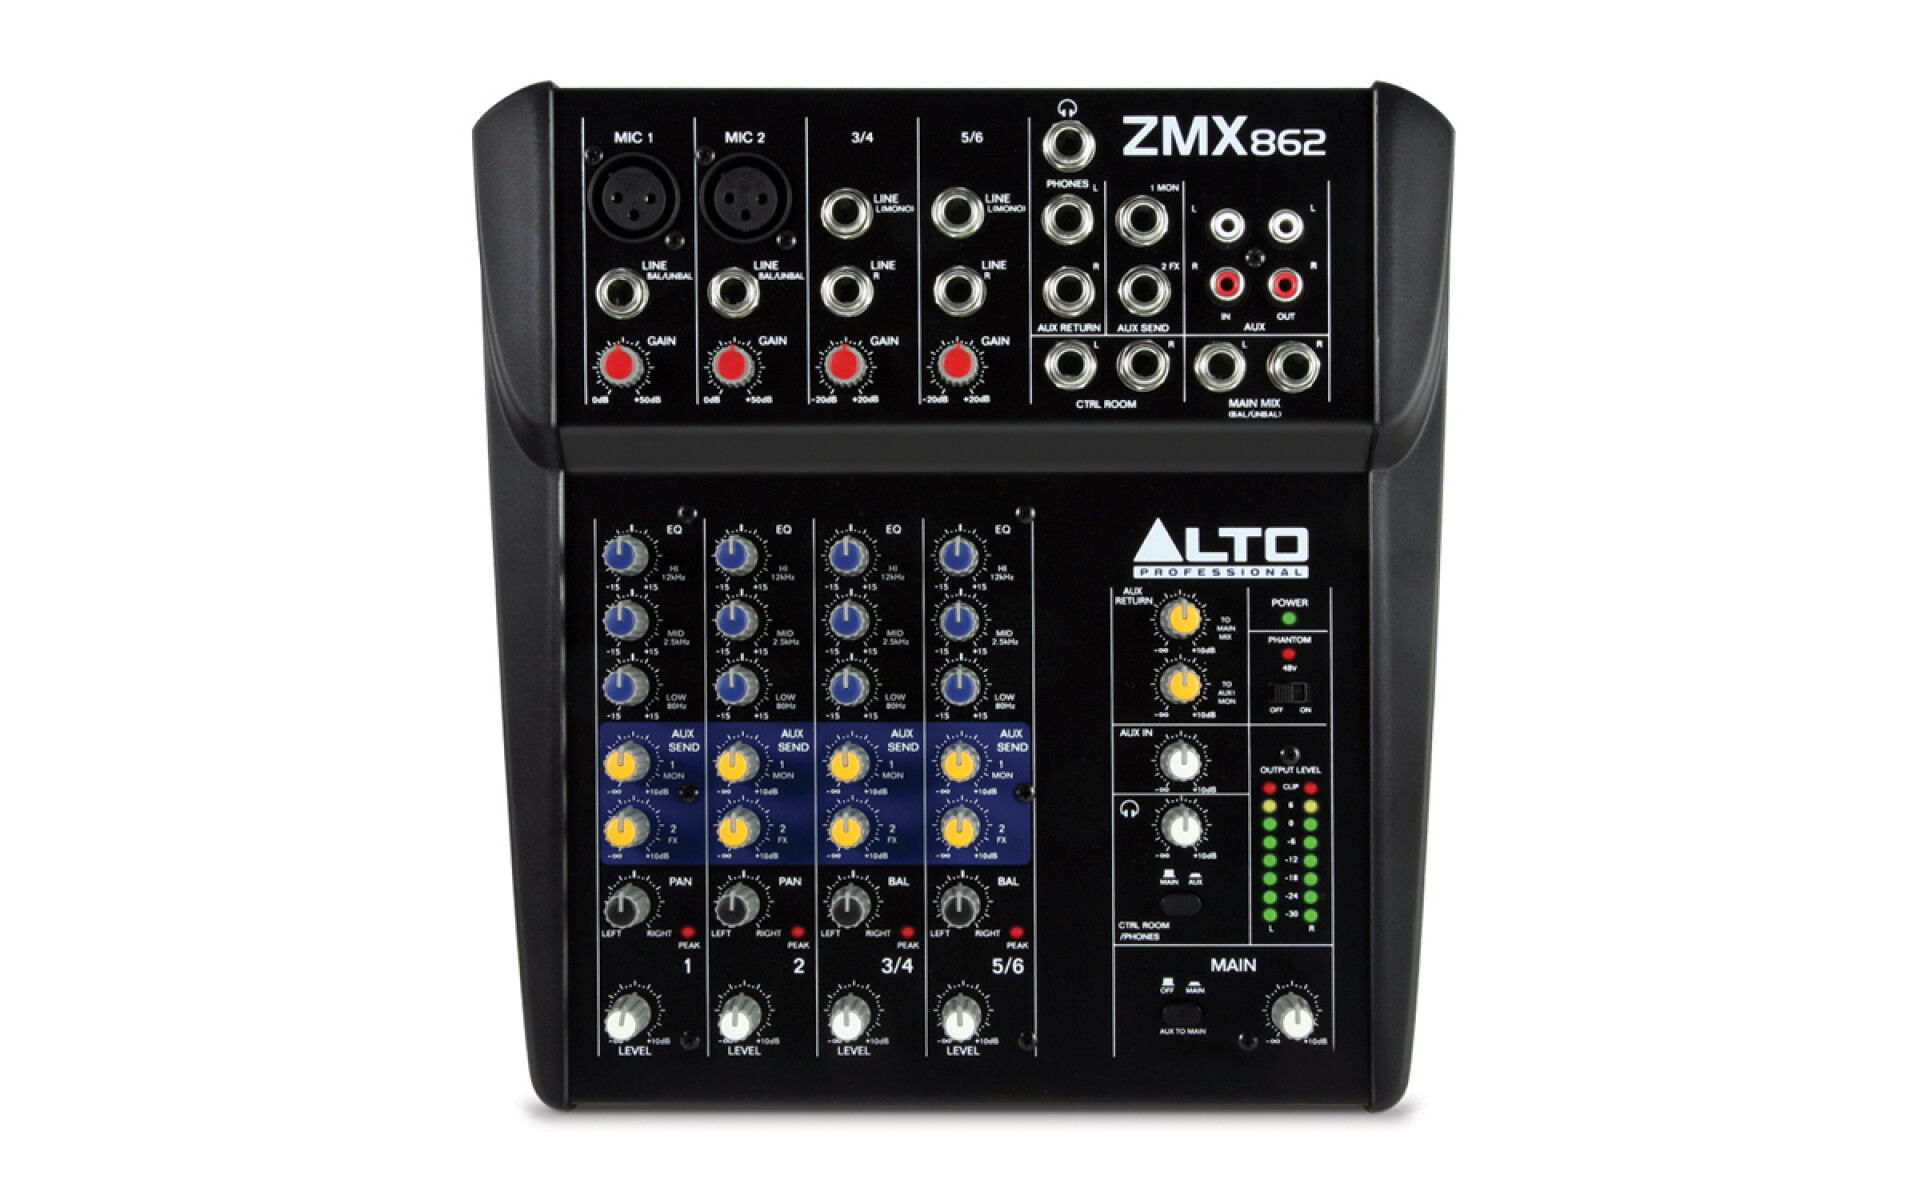 Consola Alto Zmx862 